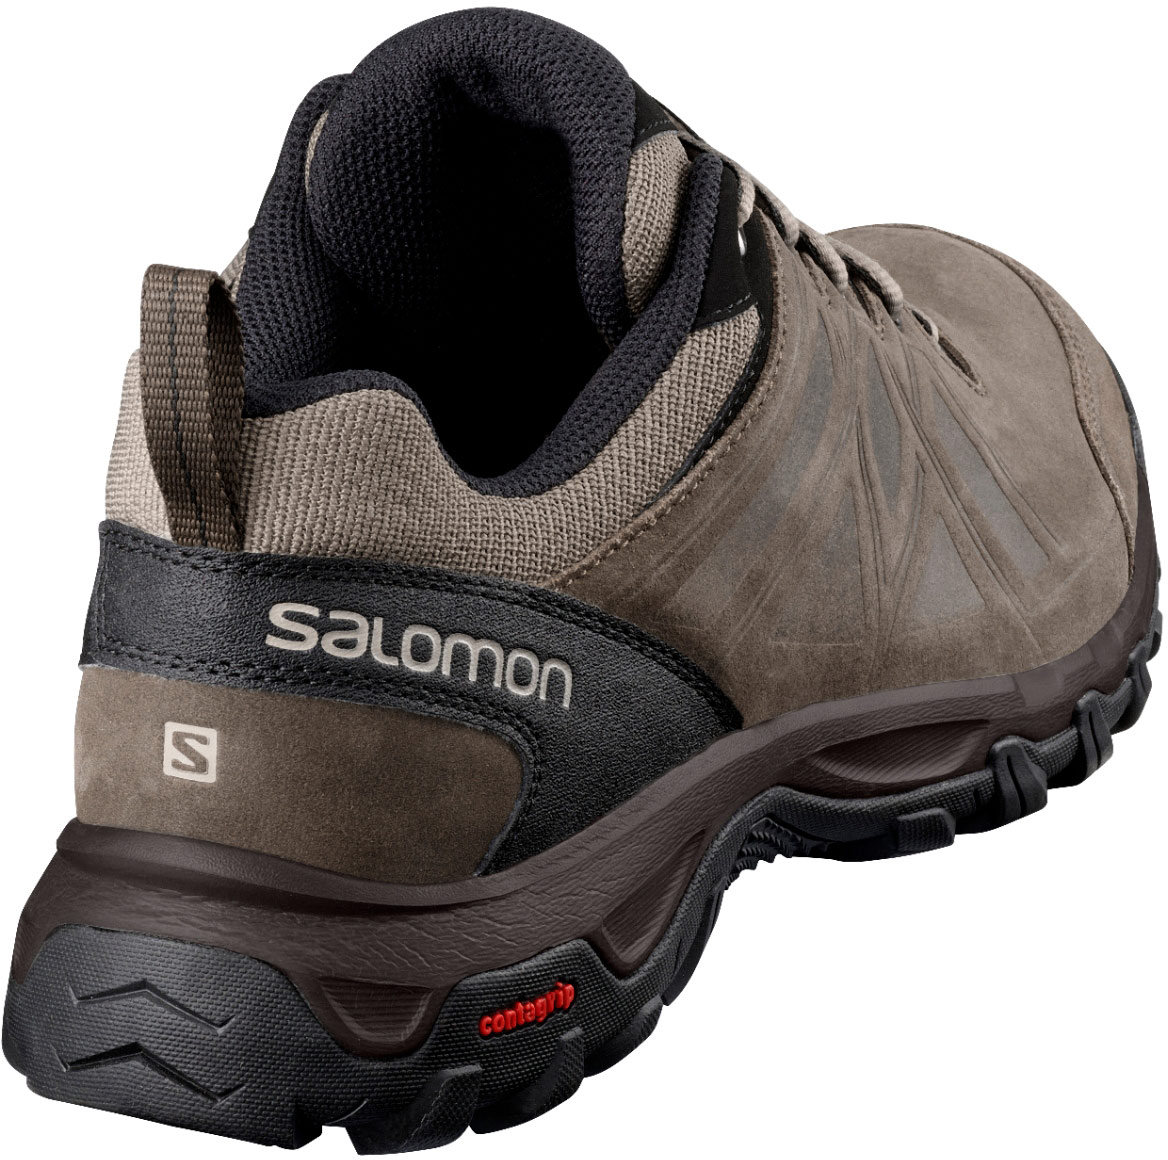 Synthetik/Textil Salomon Herren Evasion 2 GTX Hiking und Multifunktionsschuhe 